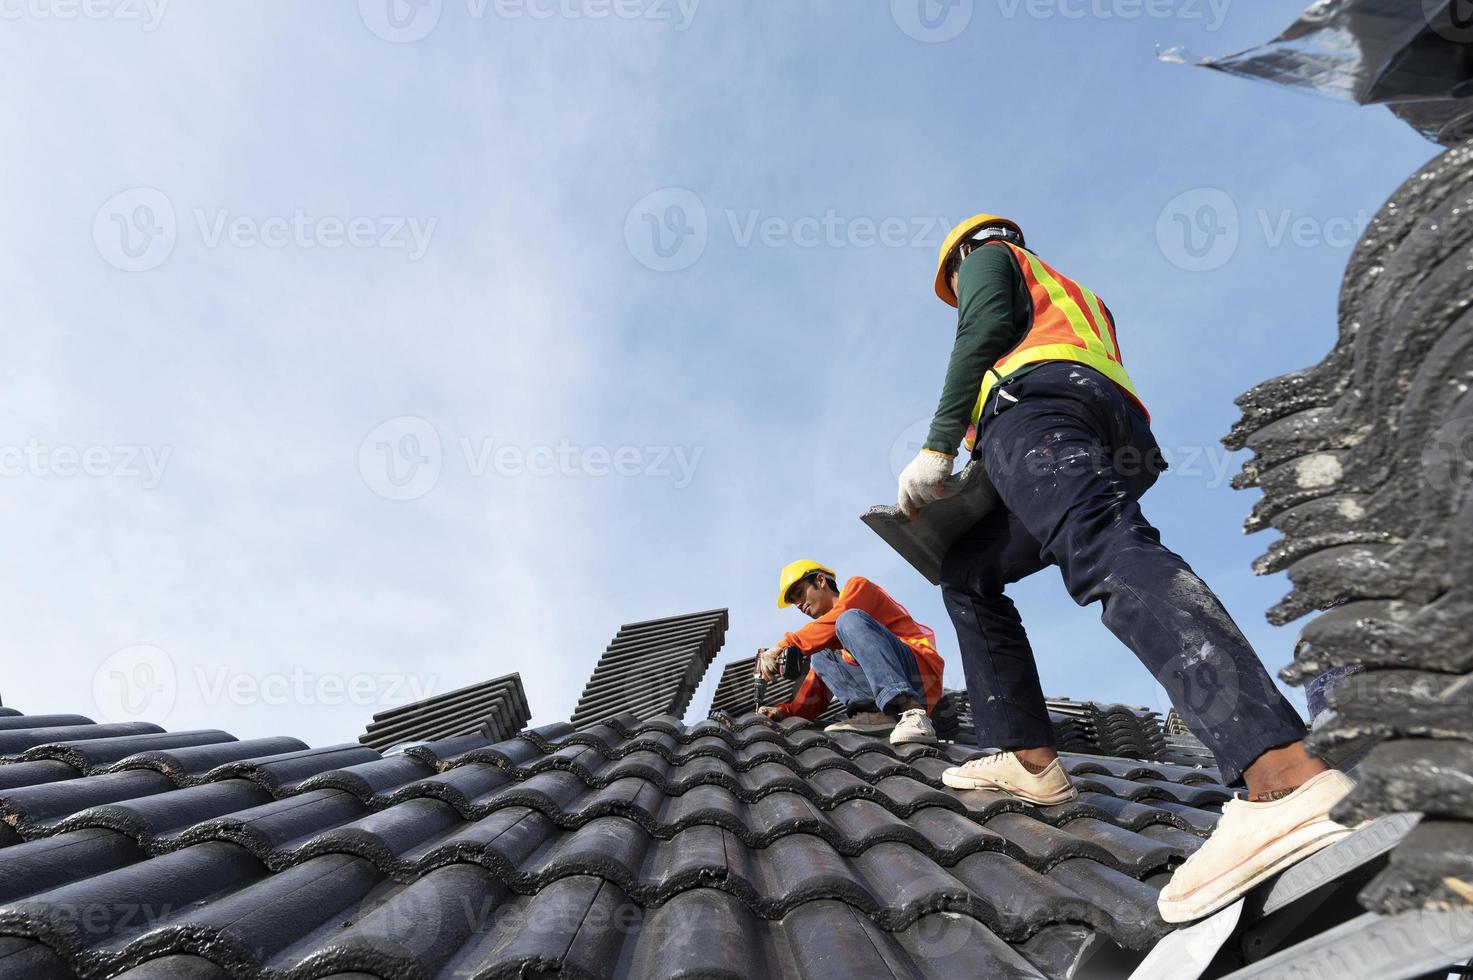 construtores em roupas de trabalho instalam novas ferramentas de cobertura, ferramentas de cobertura, furadeira elétrica e as usam em novos telhados de madeira com chapas de metal foto